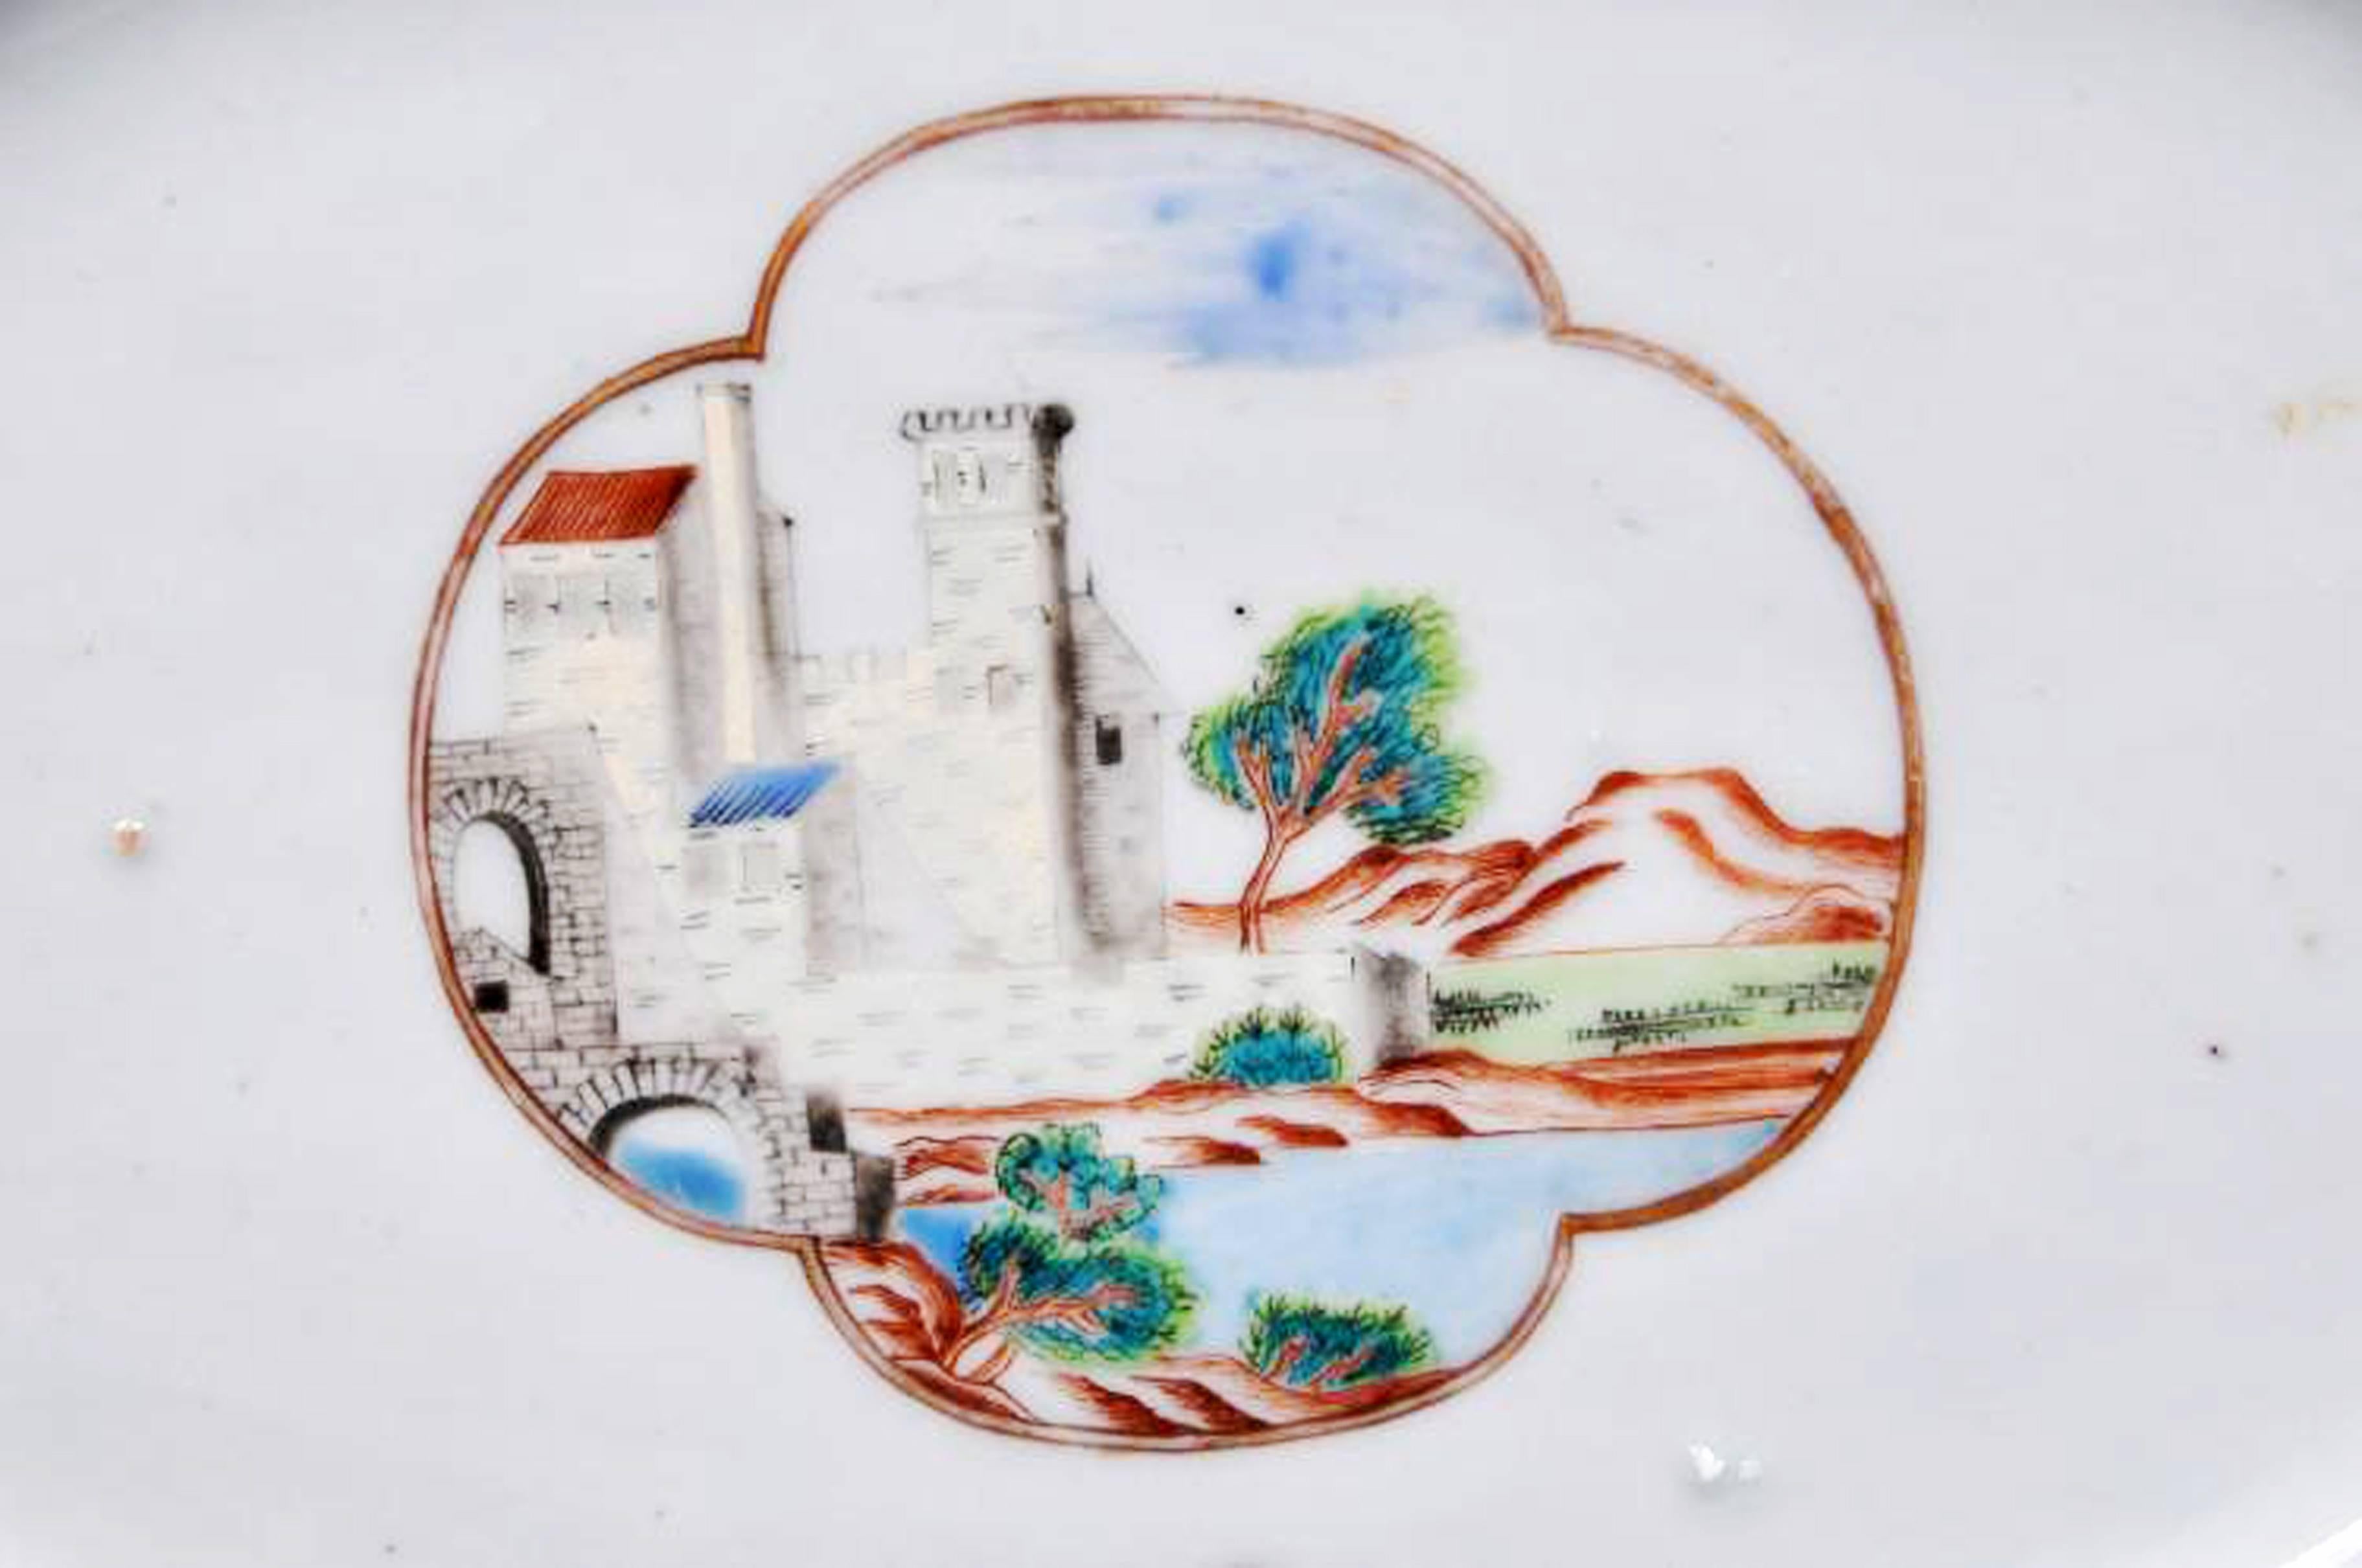 Plat en porcelaine armoriée d'exportation chinoise,
Armoiries du pôle,
vers 1745

Le plat en porcelaine armoriée d'exportation chinoise est peint de chaque côté de panneaux représentant des navires en mer près de la terre et, dans l'un d'eux, la